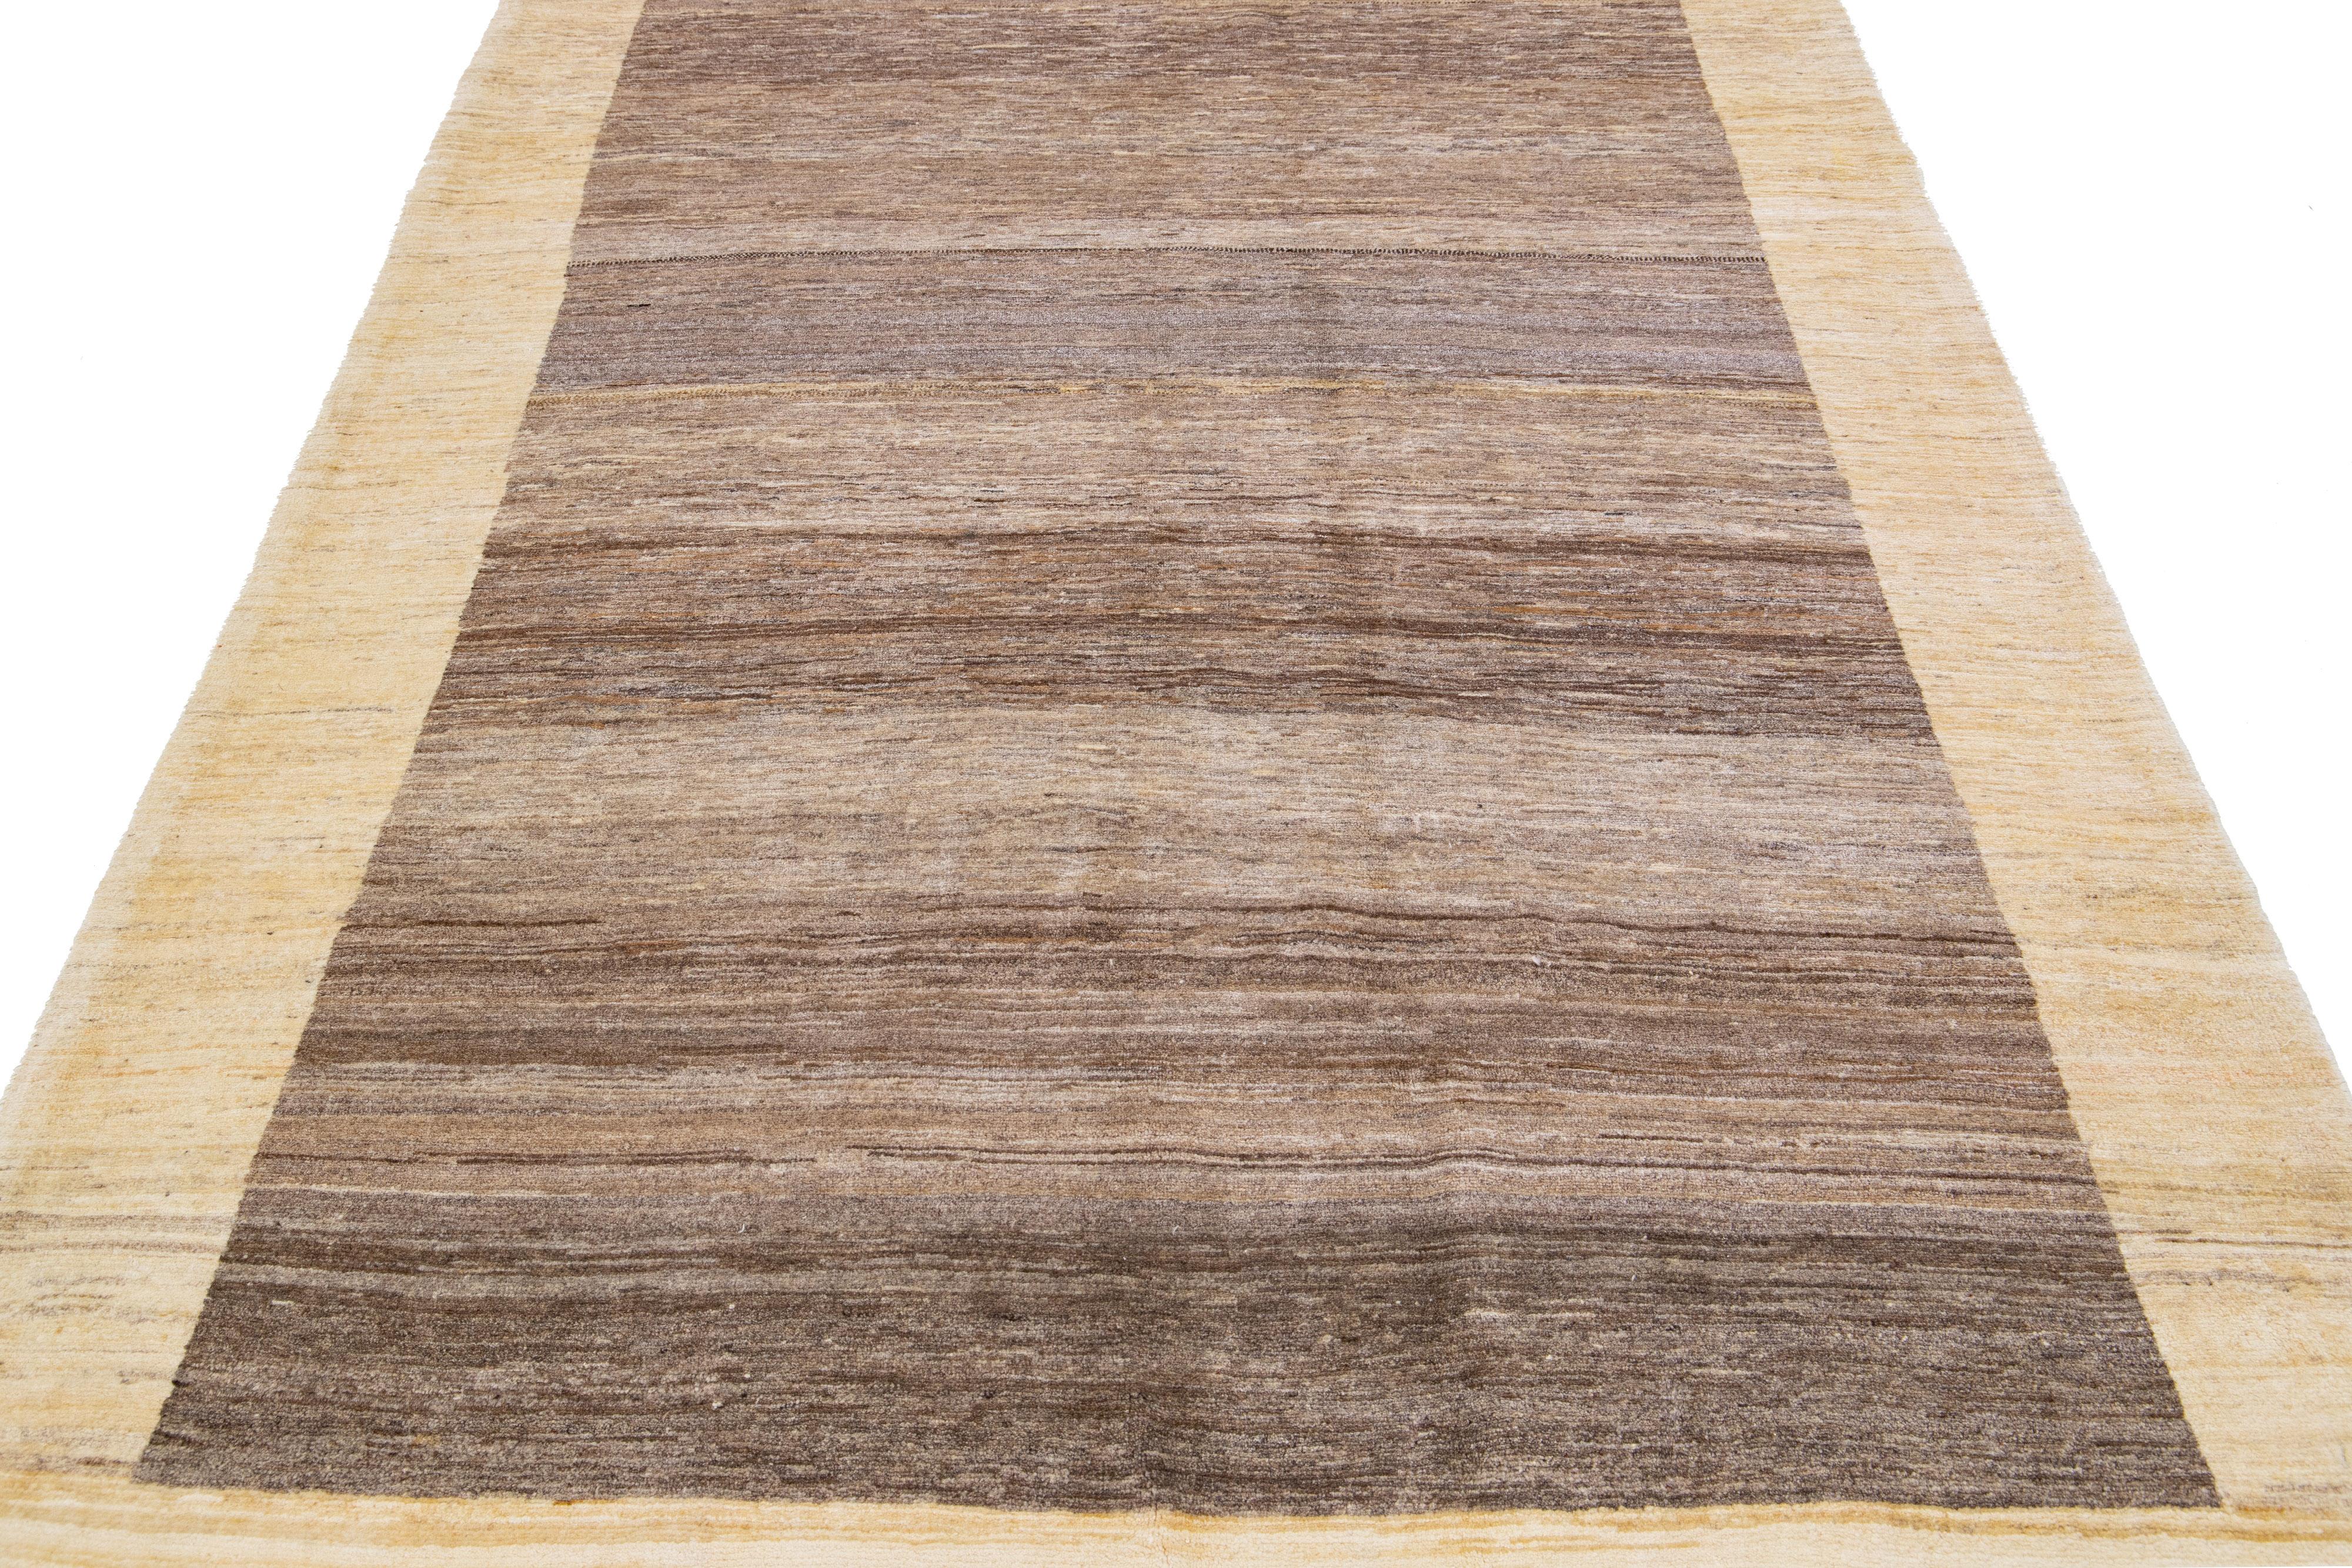 Magnifique tapis moderne en laine tissée à la main de style Gabbeh, avec un champ de couleur marron. Cette pièce a des accents beiges dans un magnifique design minimaliste.

Ce tapis mesure : 5'8